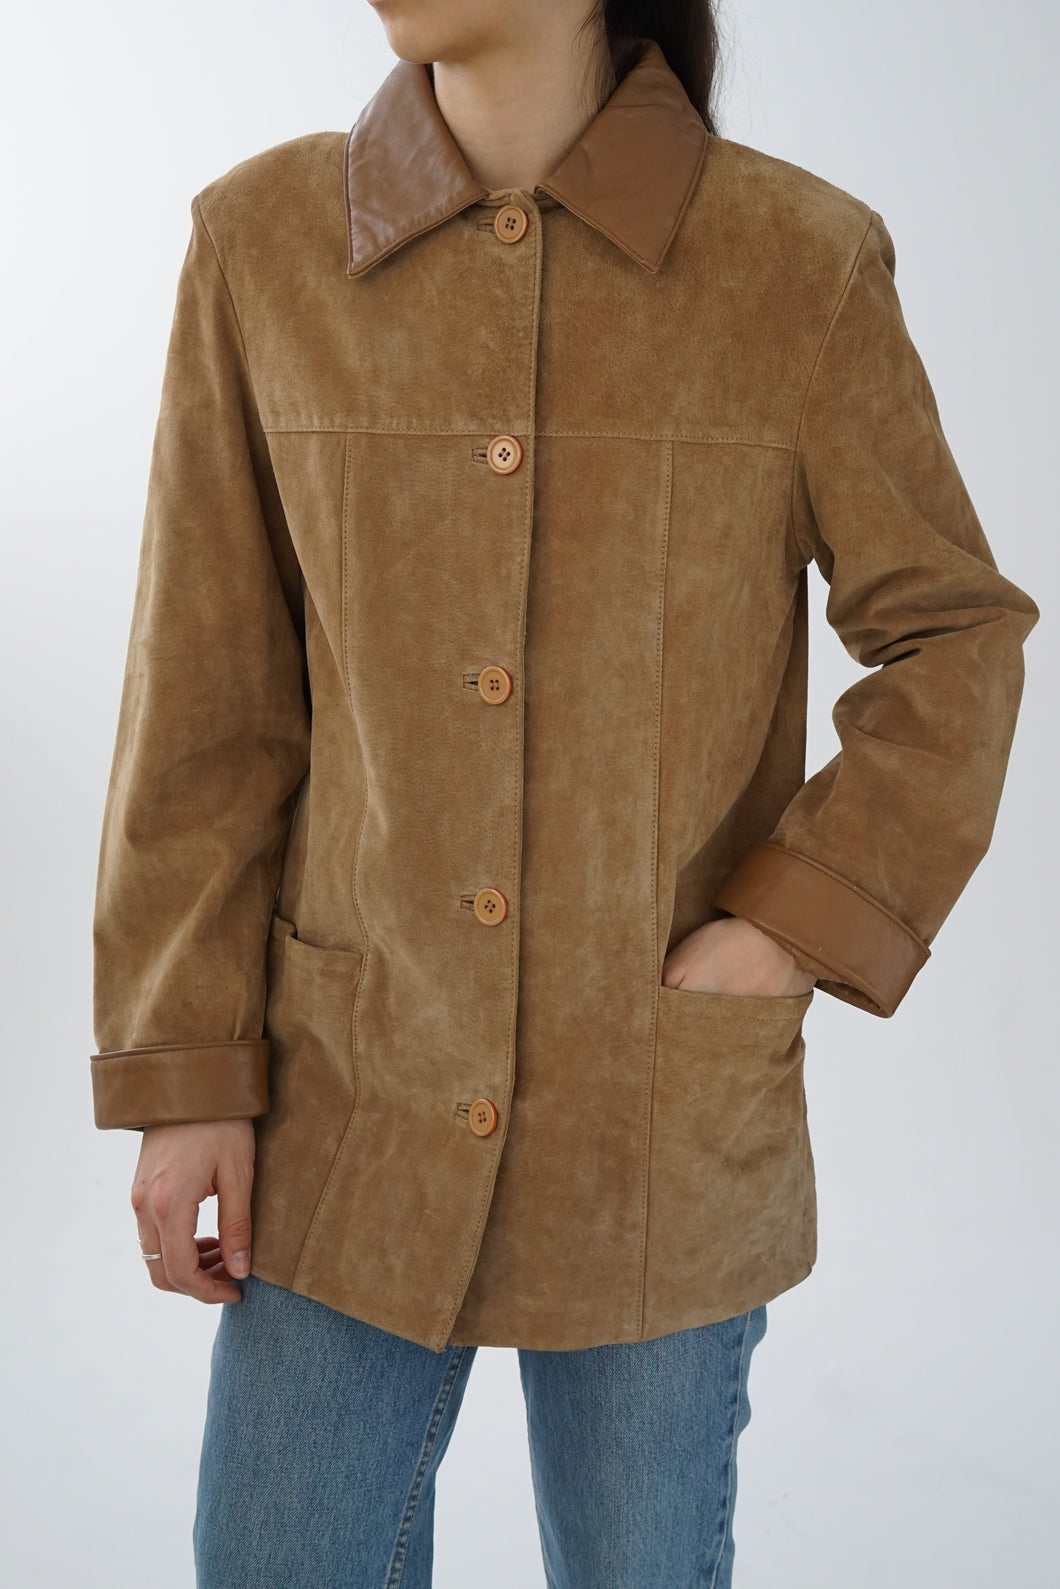 Manteau léger vintage en suède tan Sélection A&S pour femme taille S